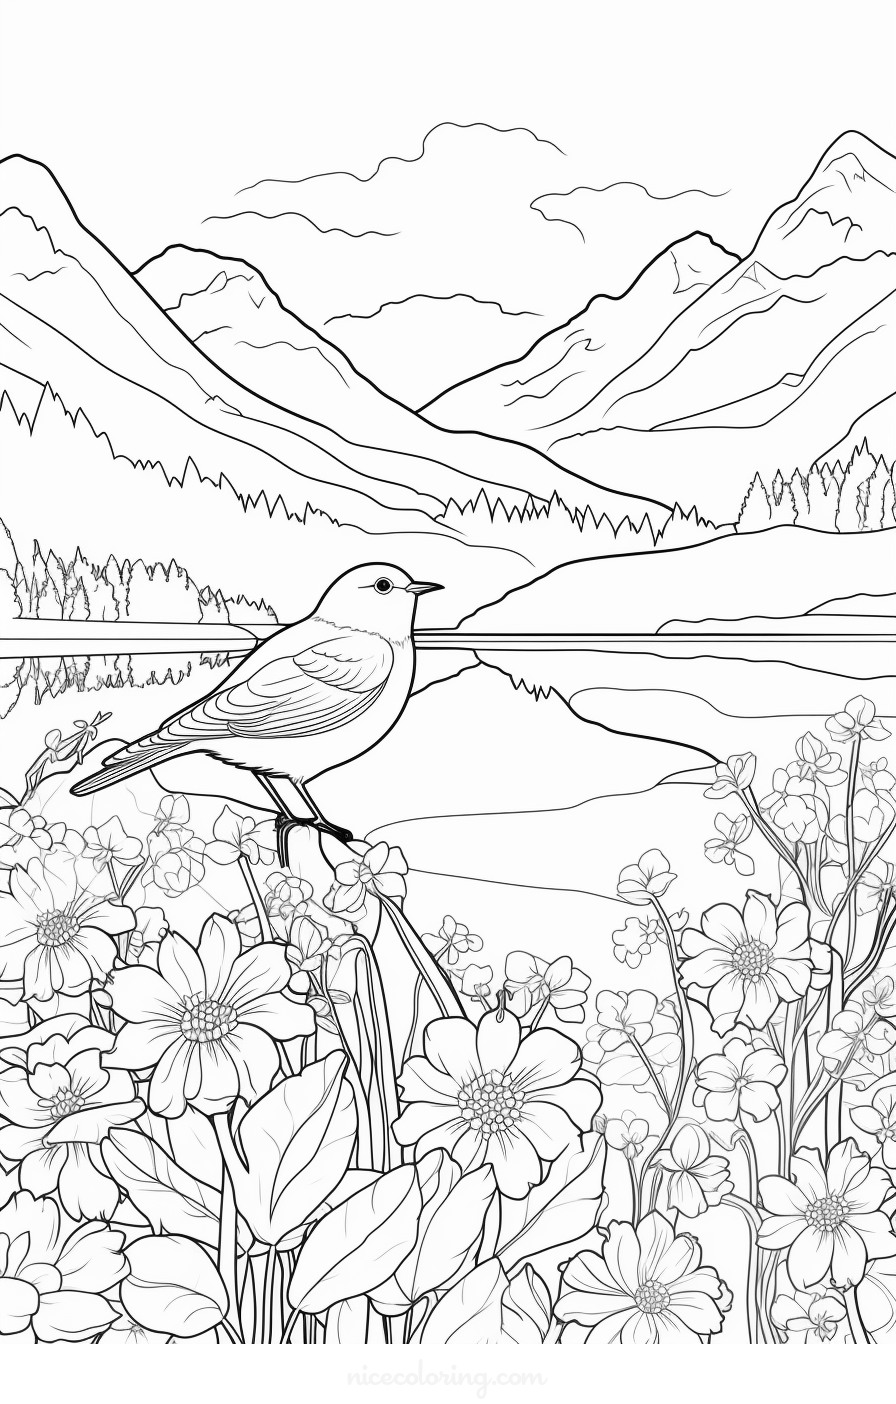 Uma cena de várias aves em um cenário florestal para coloração